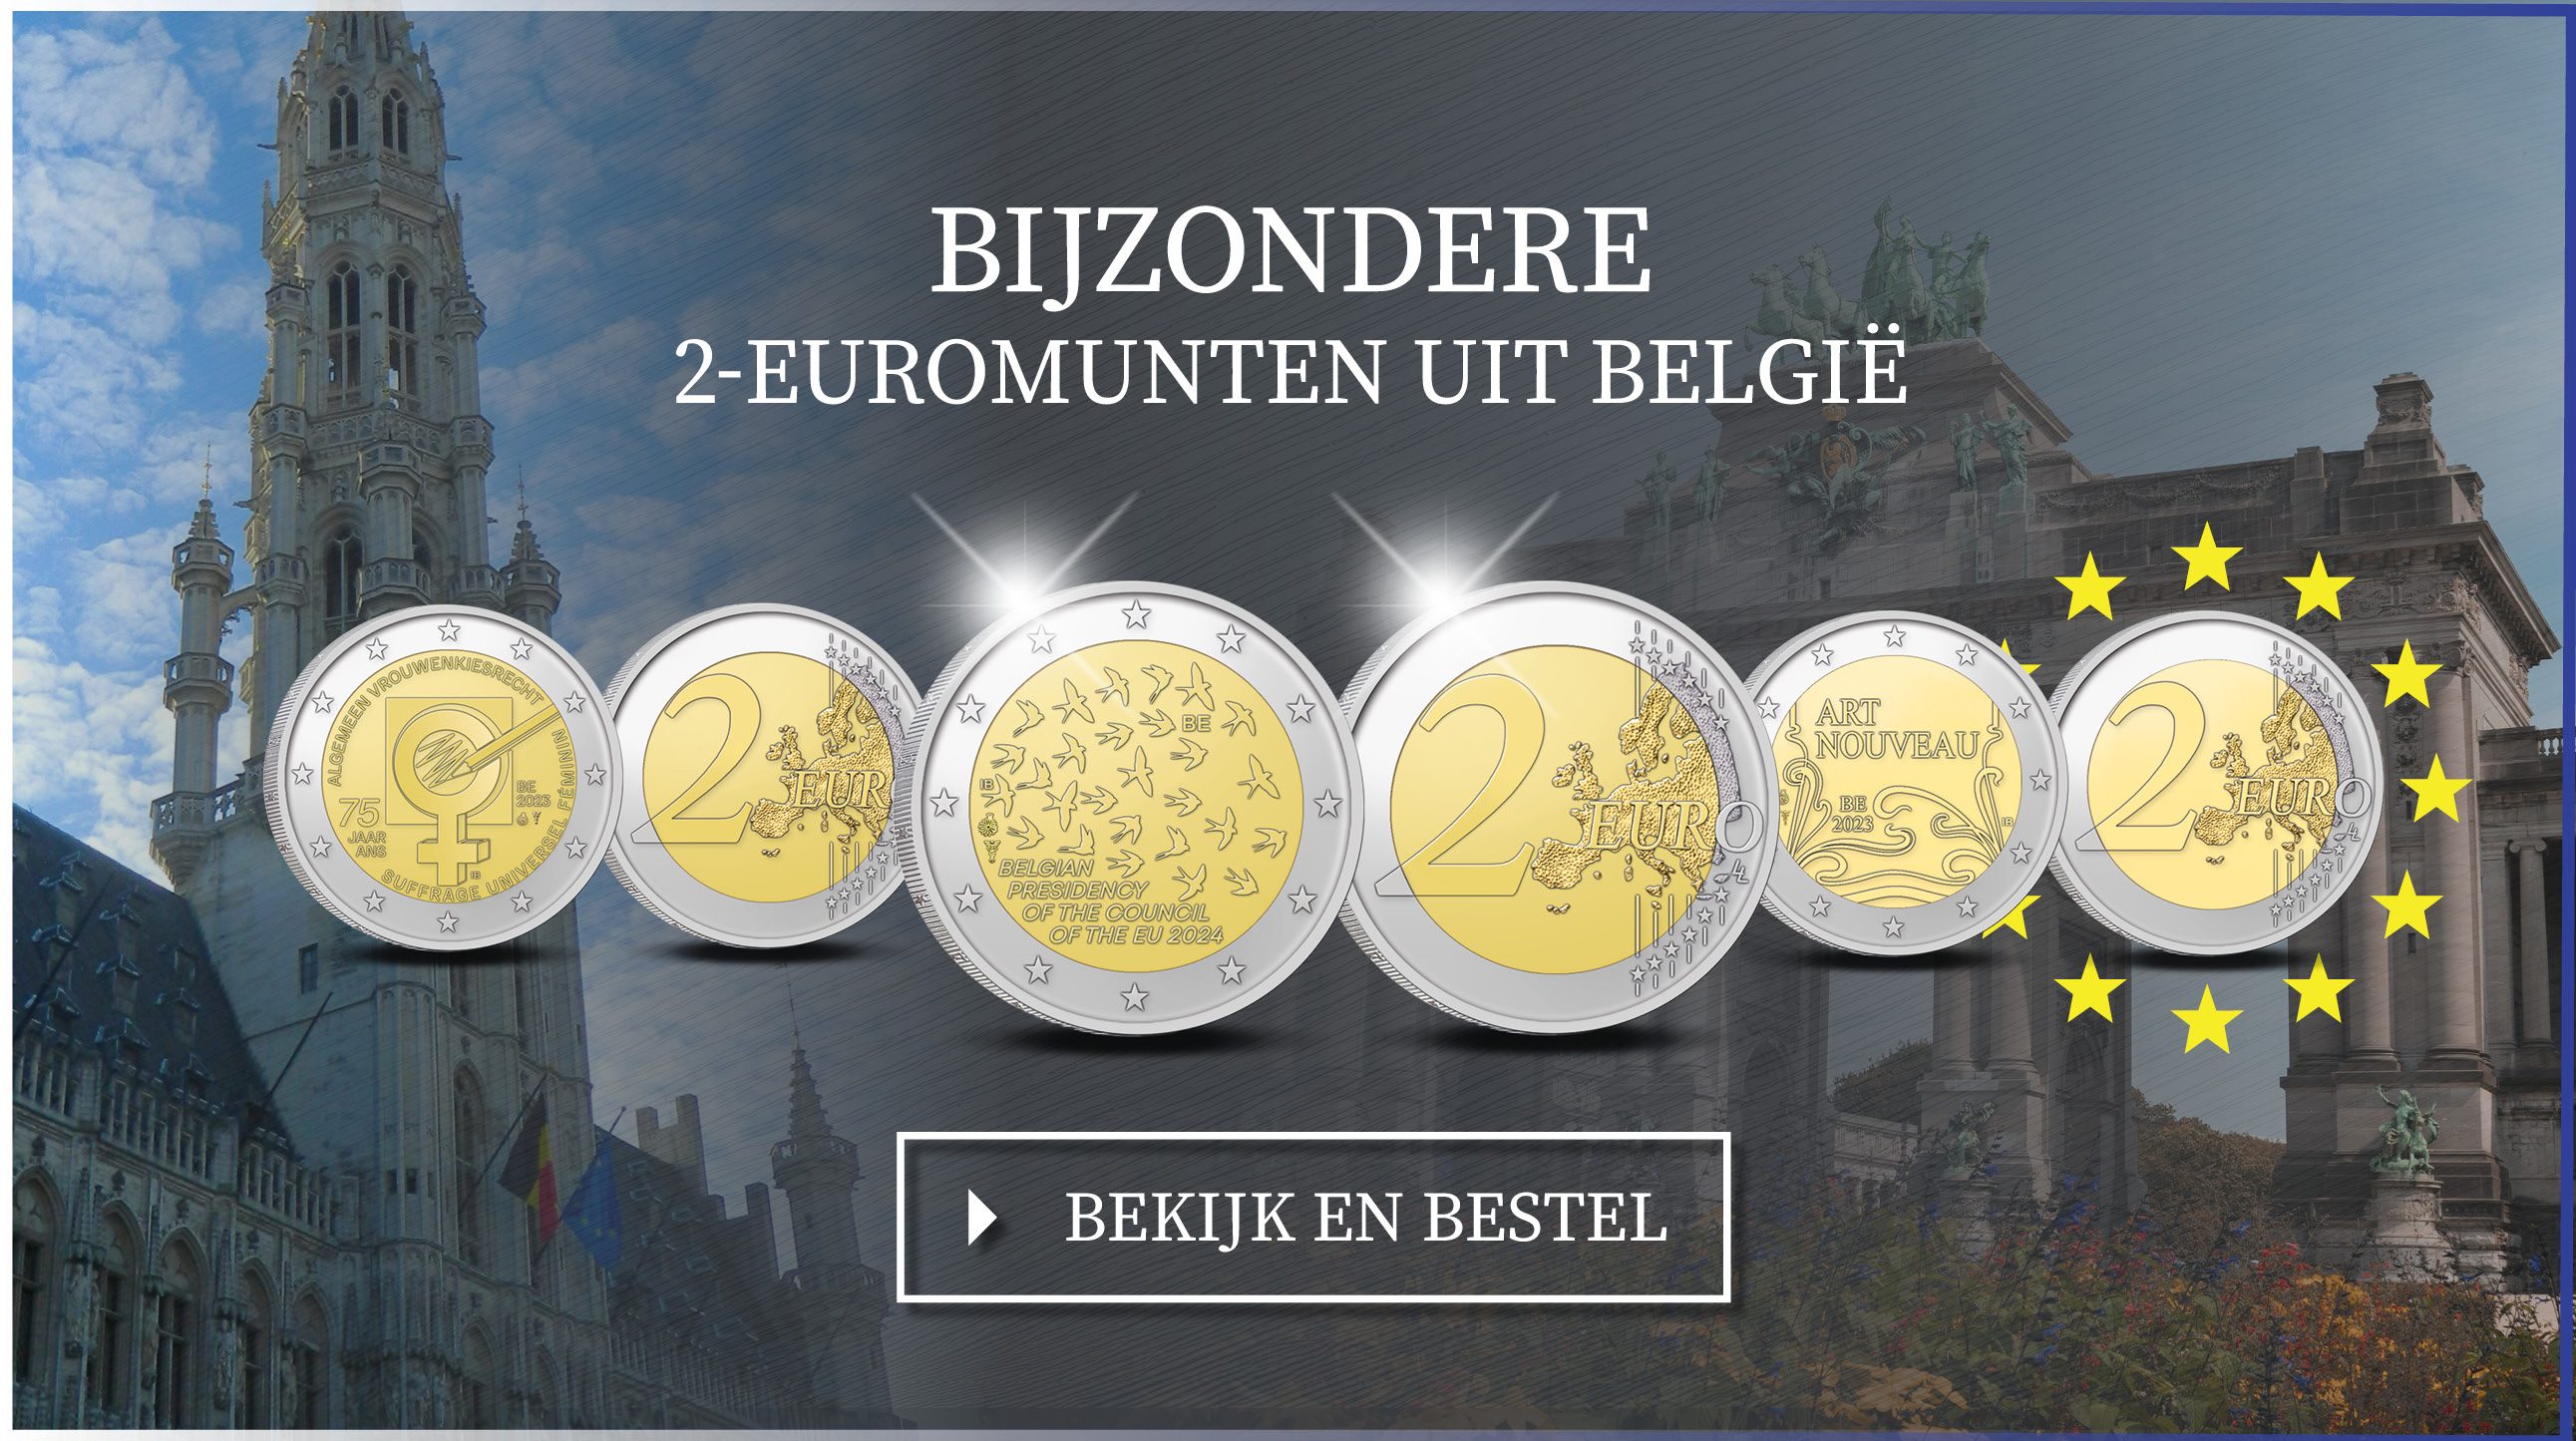 Bekijk en bestel: 2-Euromunten